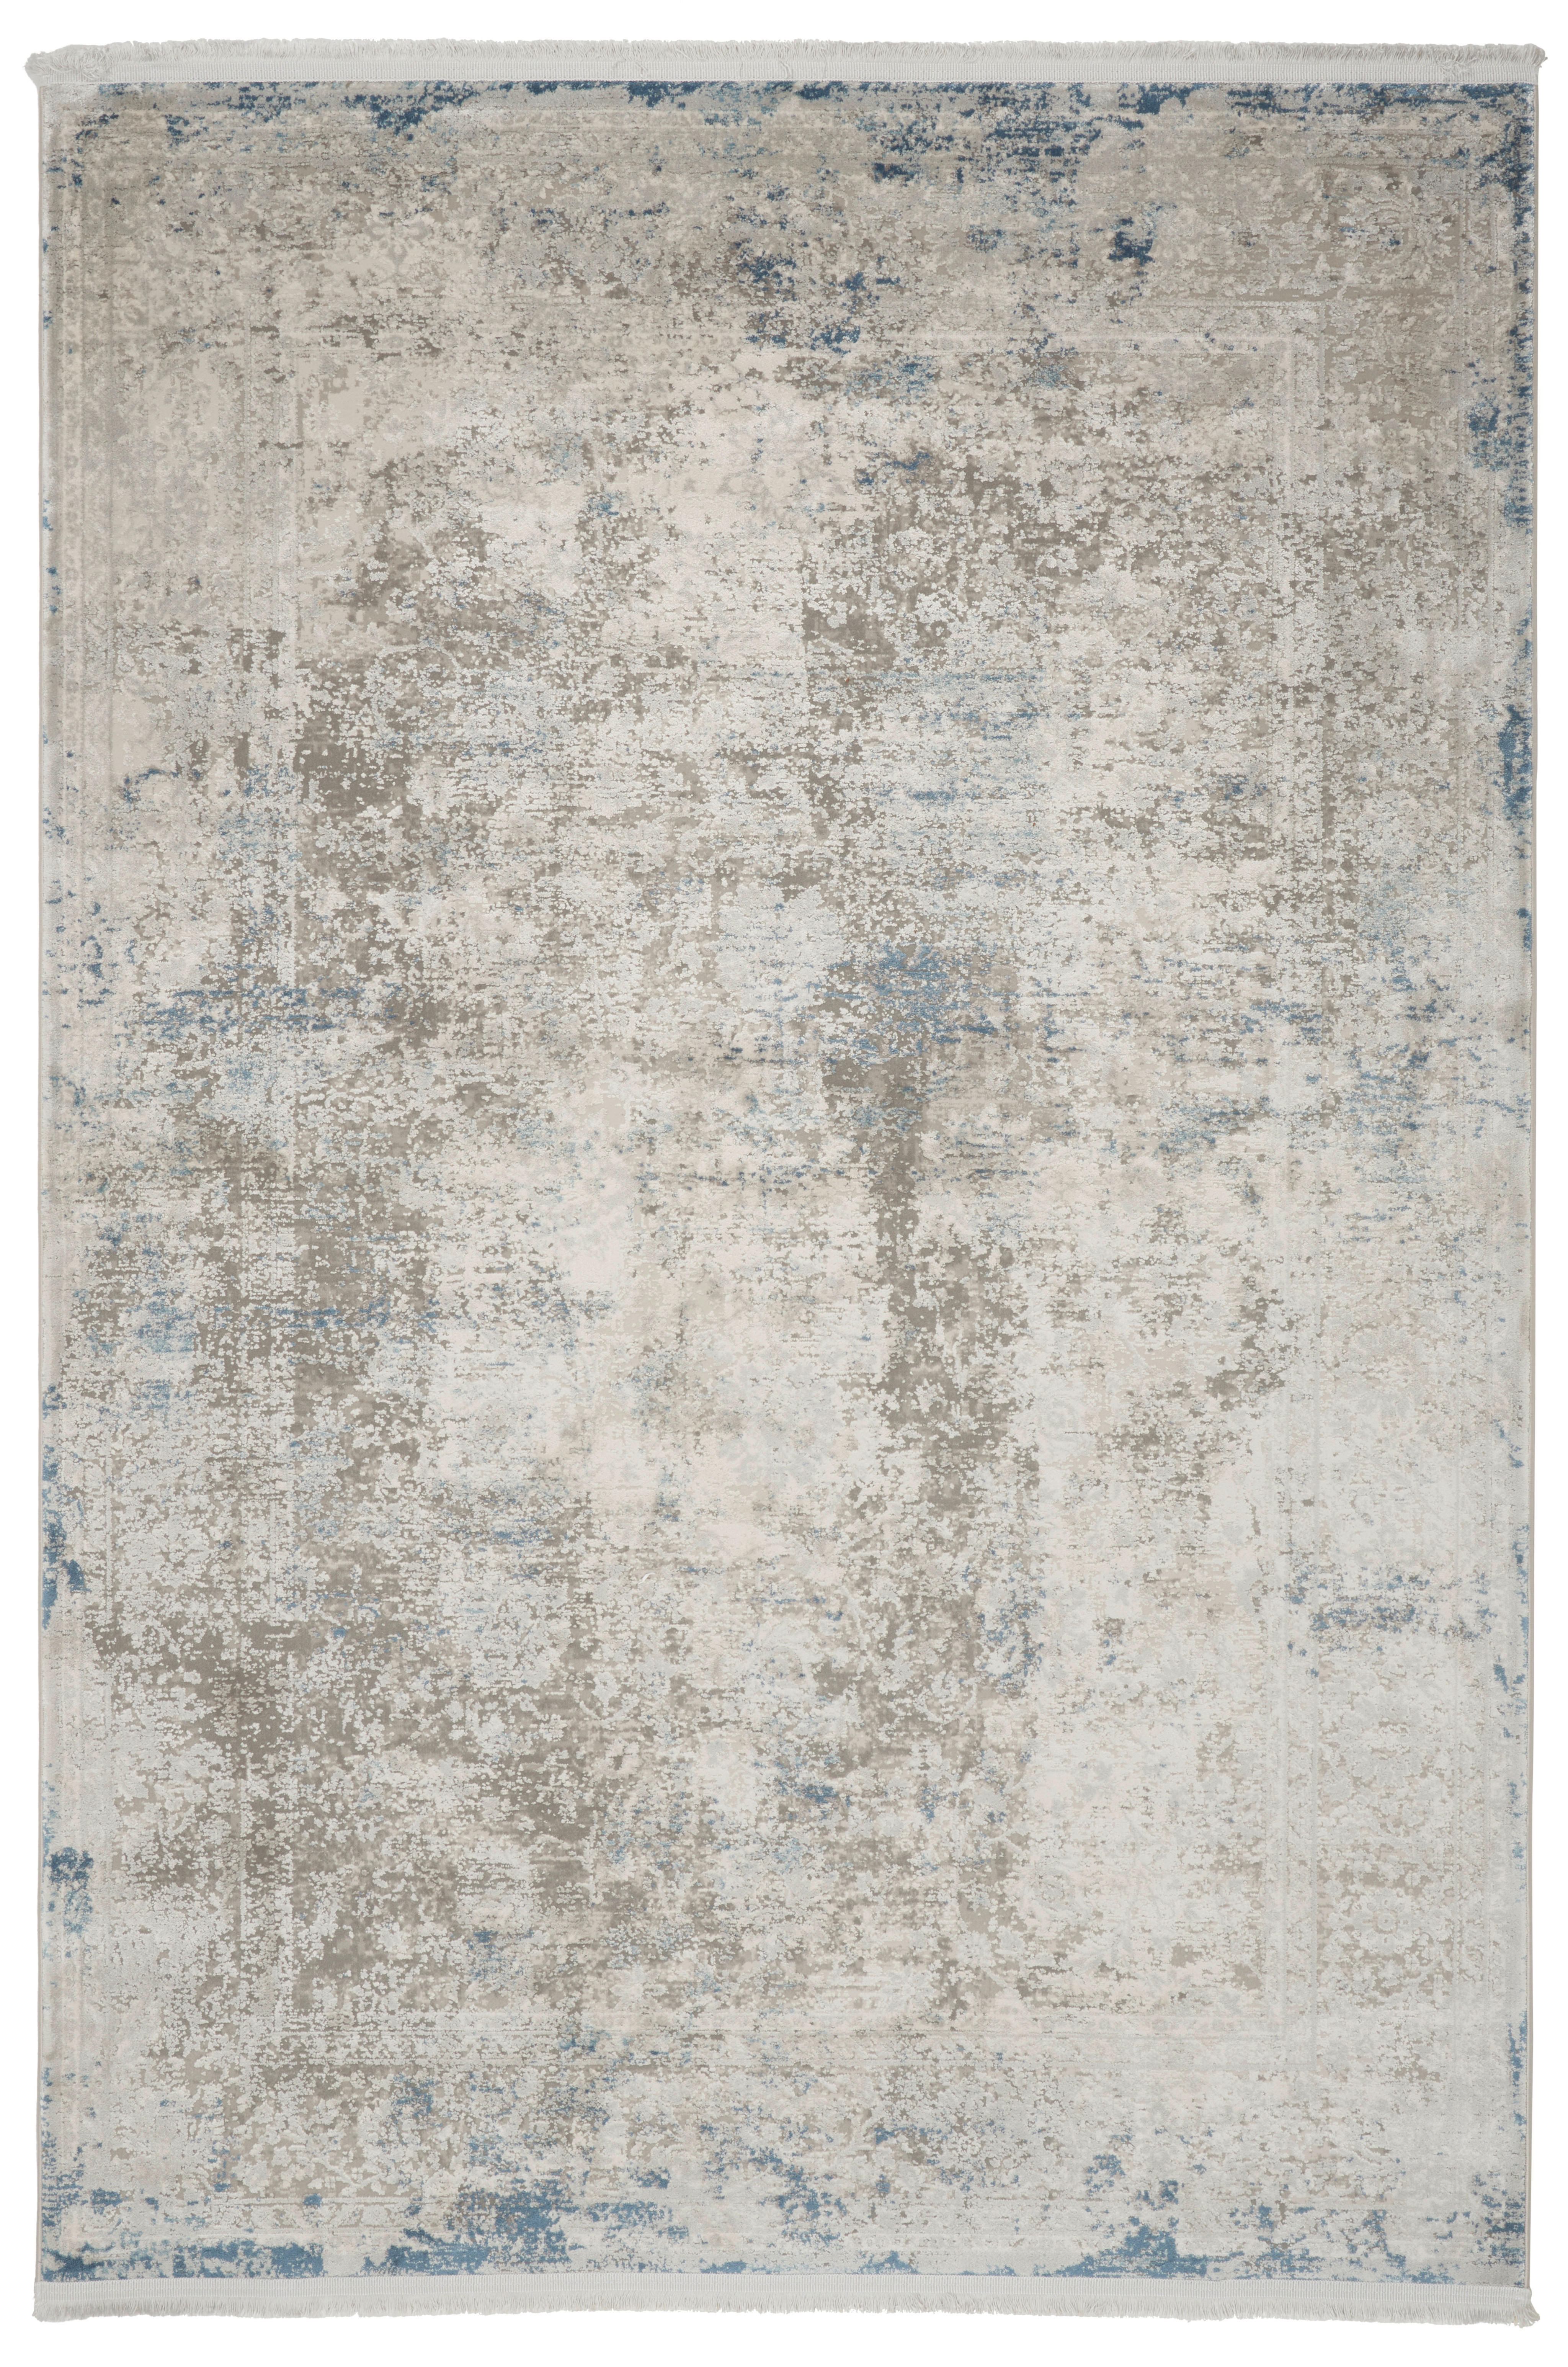 VINTAGE-TEPPICH  80/150 cm  Blau   - Blau, Design, Naturmaterialien/Textil (80/150cm) - Dieter Knoll